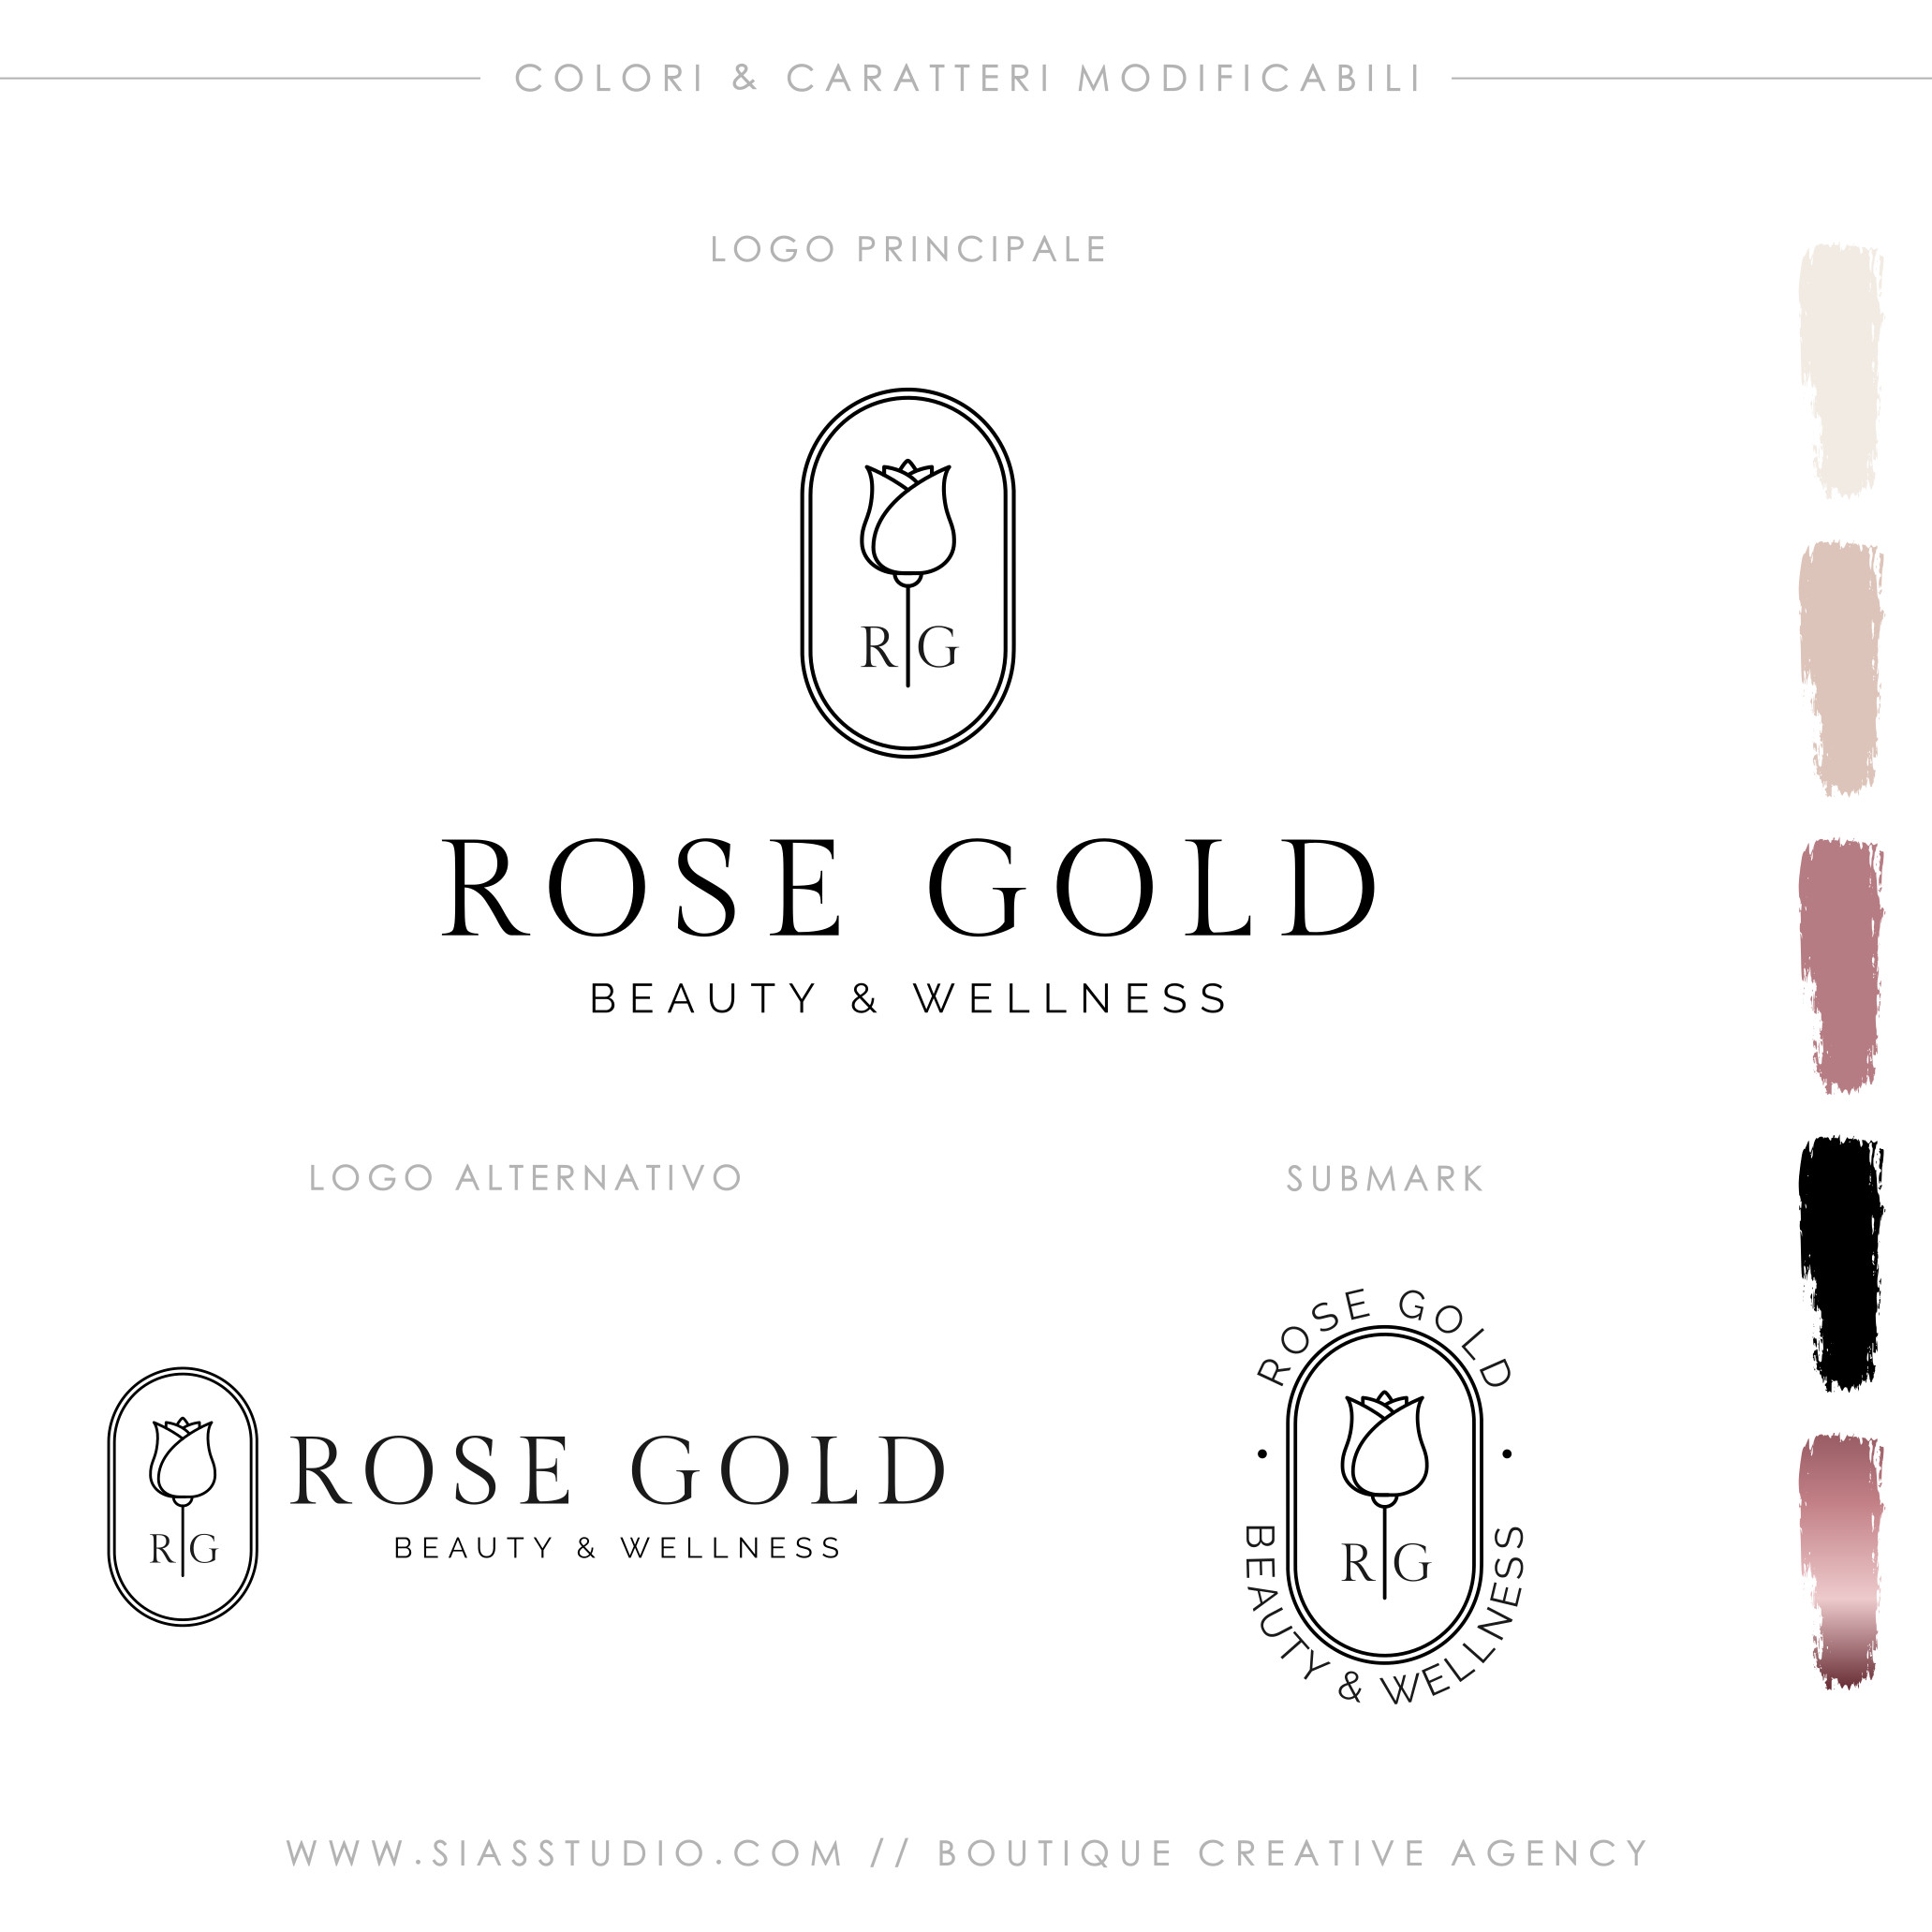 Rose Gold - Pacchetto di branding